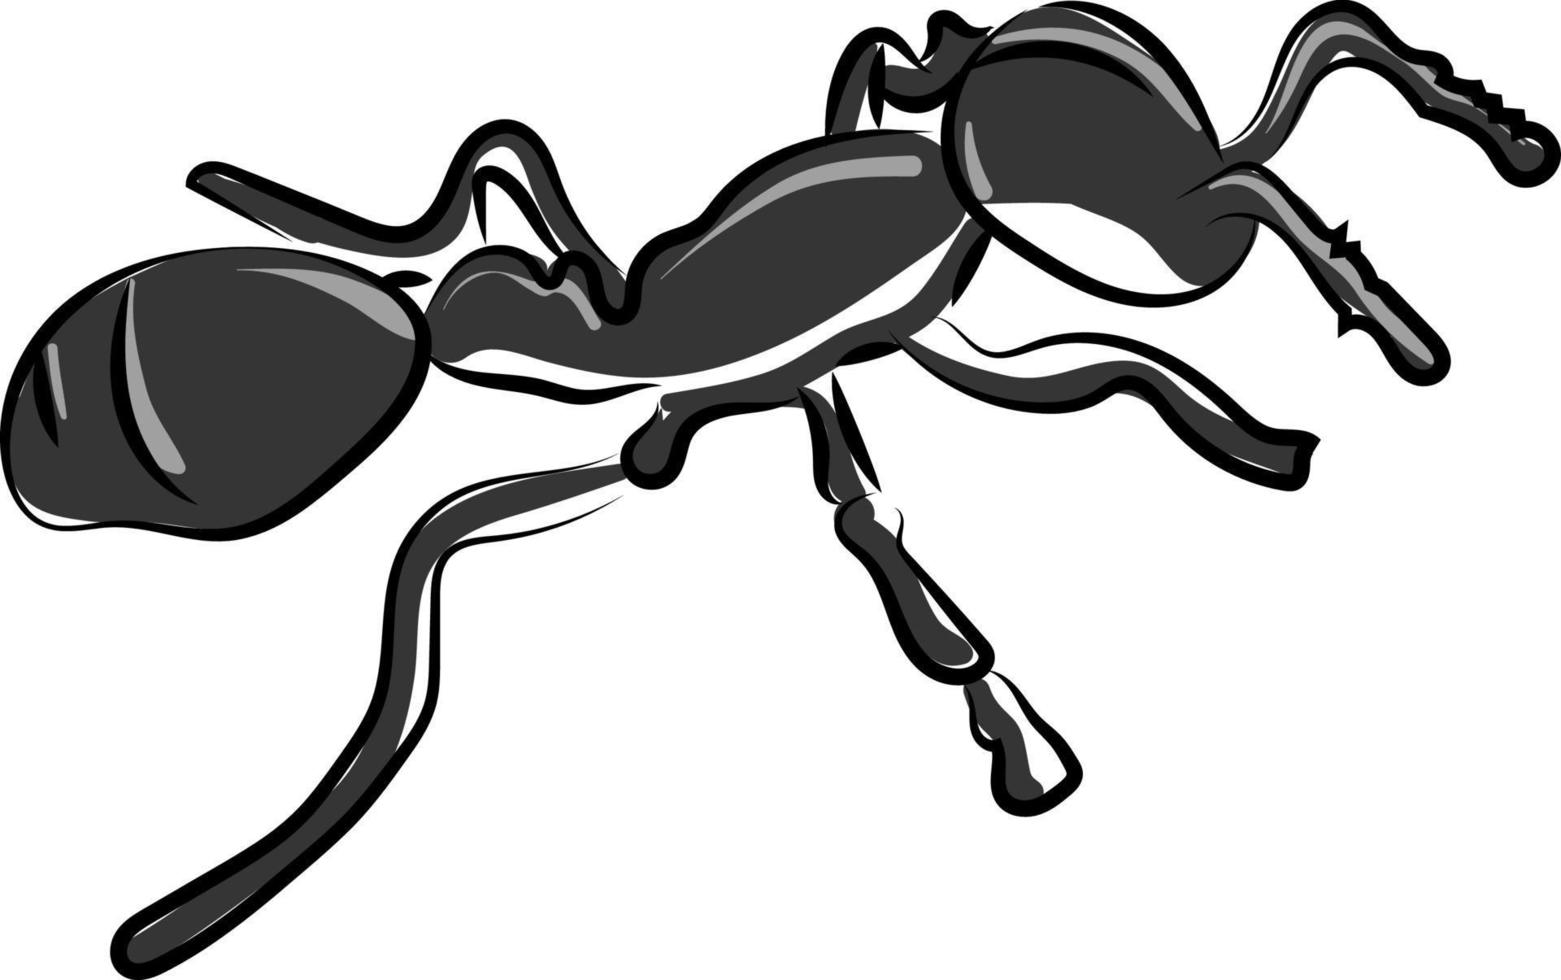 Pequeña hormiga negra, ilustración, vector sobre fondo blanco.